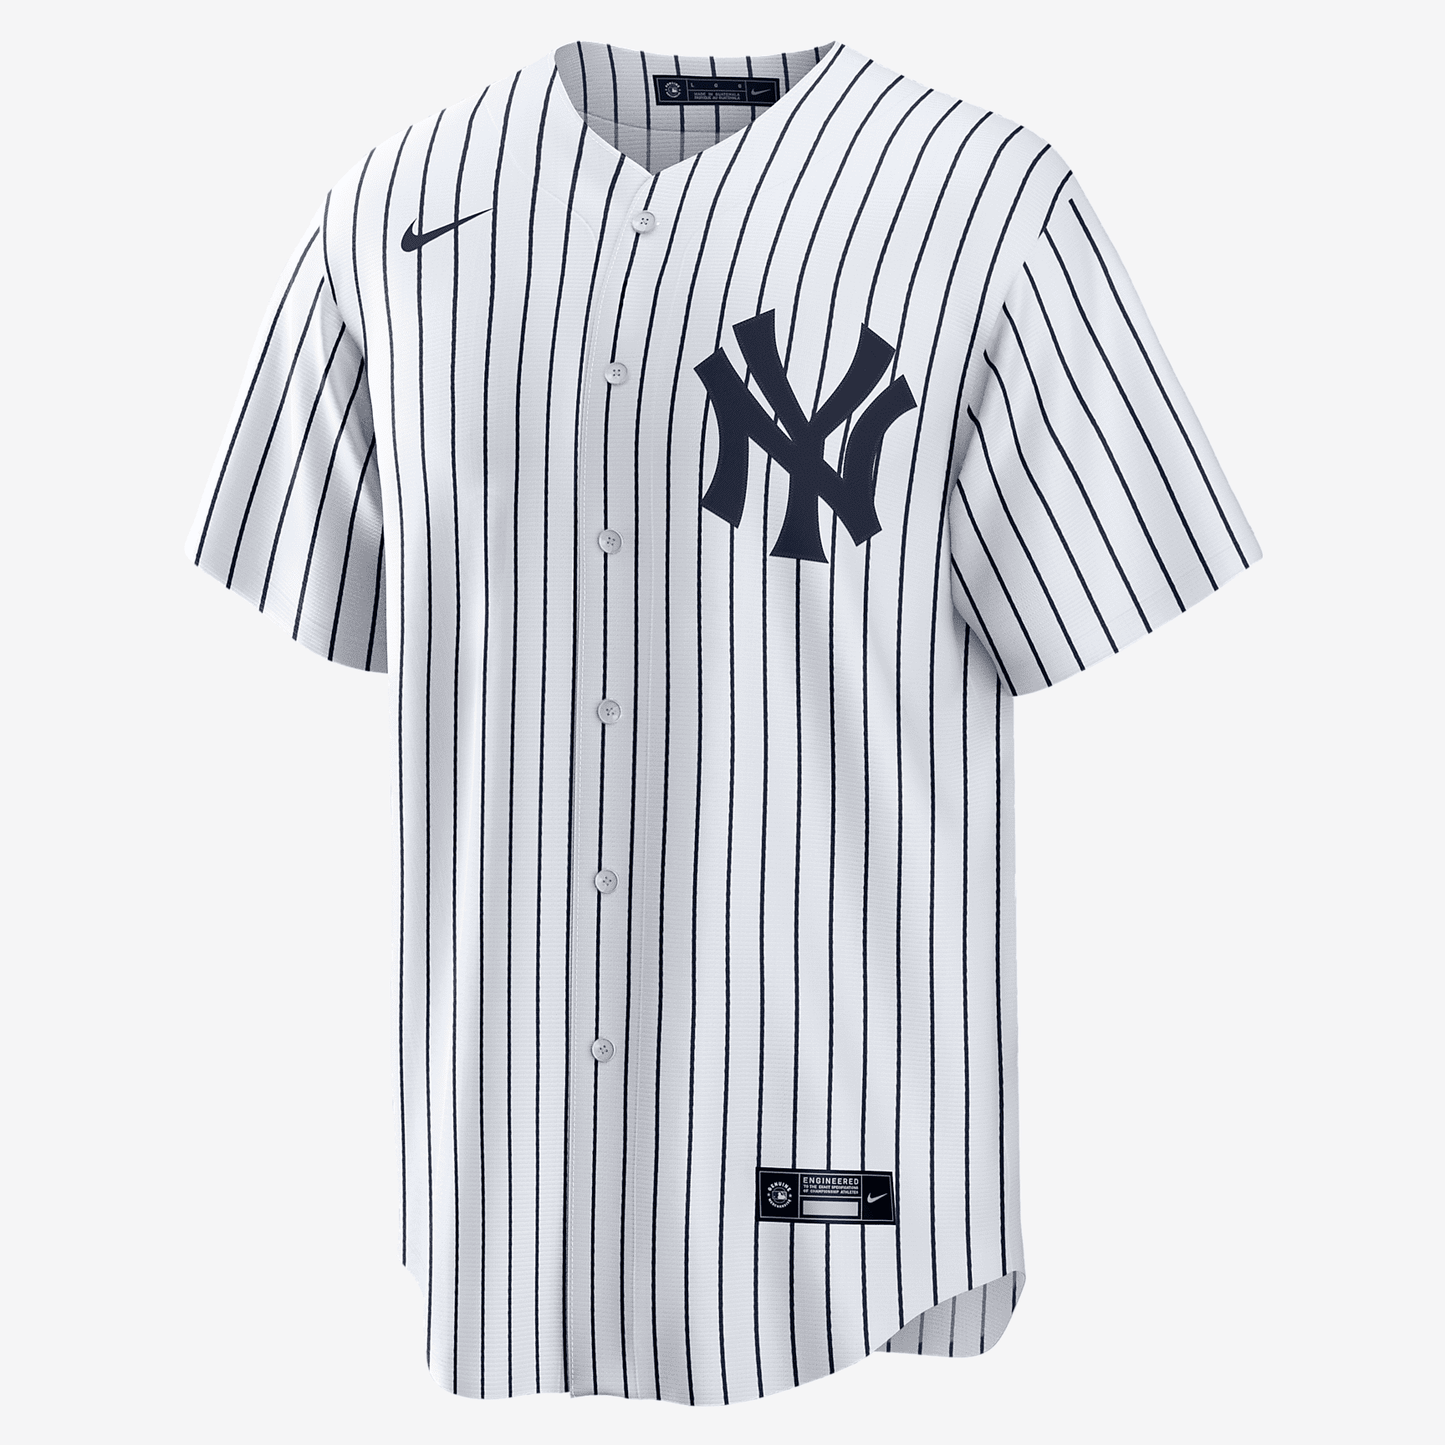 MLB New York Yankees (Gleyber Torres) Men's Replica Baseball Jersey - White